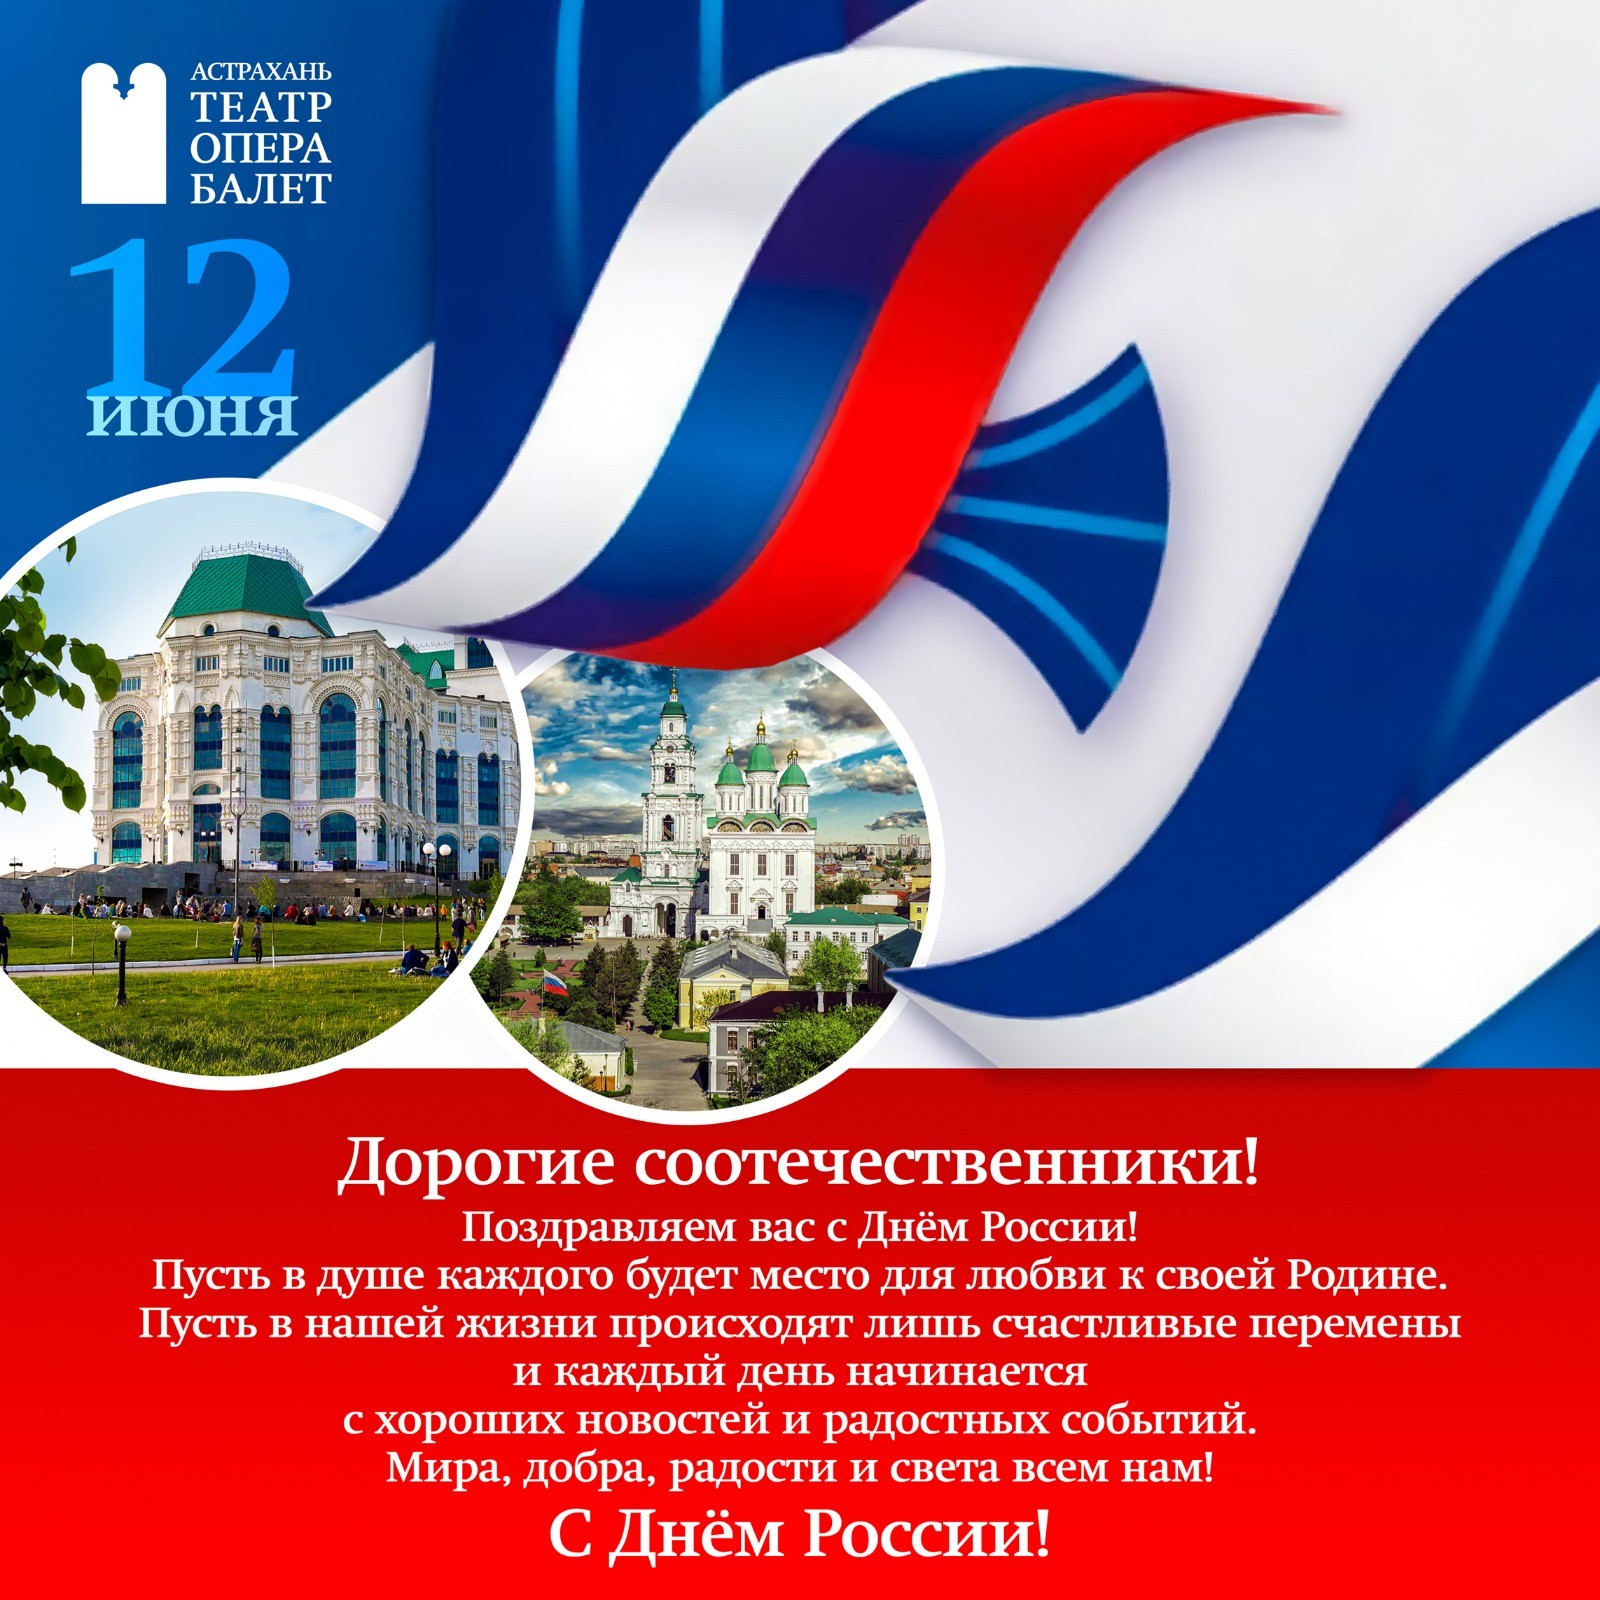 12 июня вся страна отмечает один из самых значимых государственных праздников — День России!